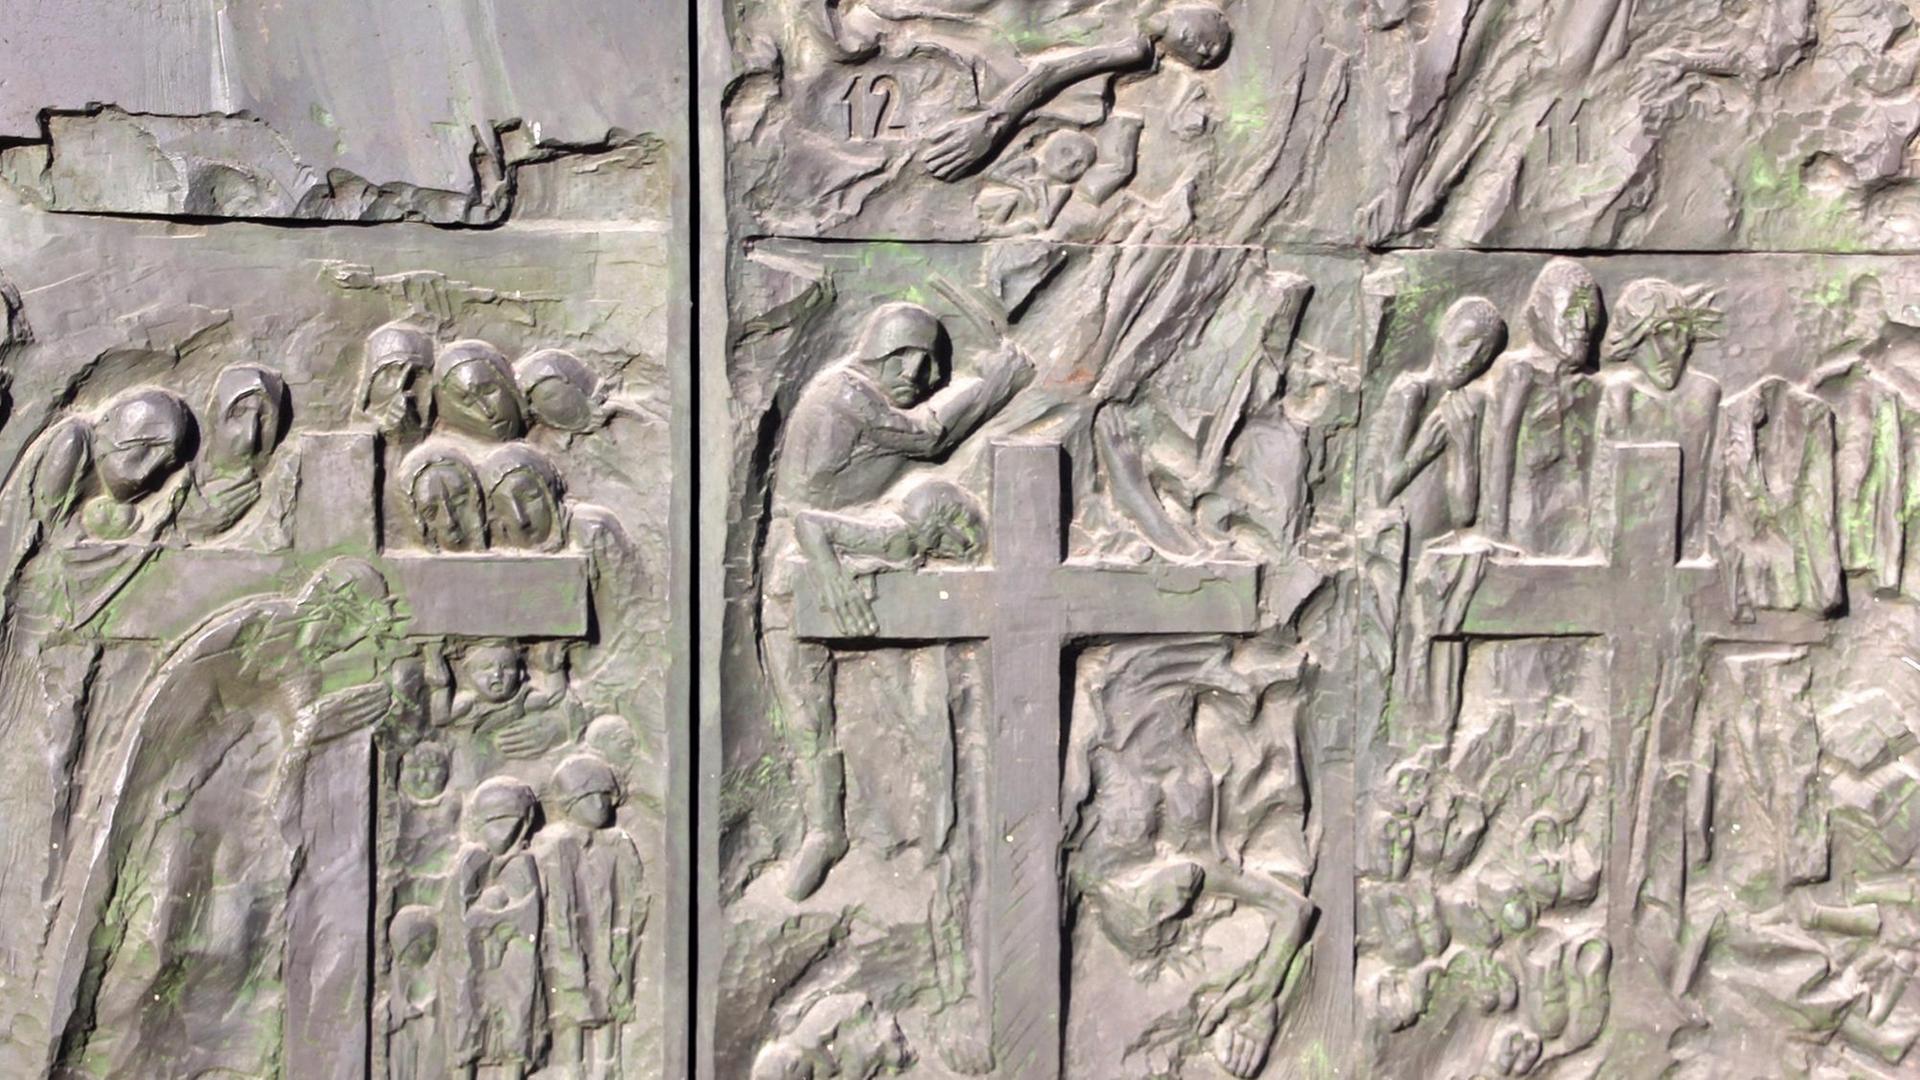 Ein Auschnitt aus der Kirchenpforte der Kolbe-Kirche in Auschwitz, aufgenommenn am 12.12.2014. Das katholische Gotteshaus wurde in den 80er Jahren in einem Neubaugebiet errichtet und ist dem in Auschwitz ermordeten Franziskaner-Mönch, gewidmet.